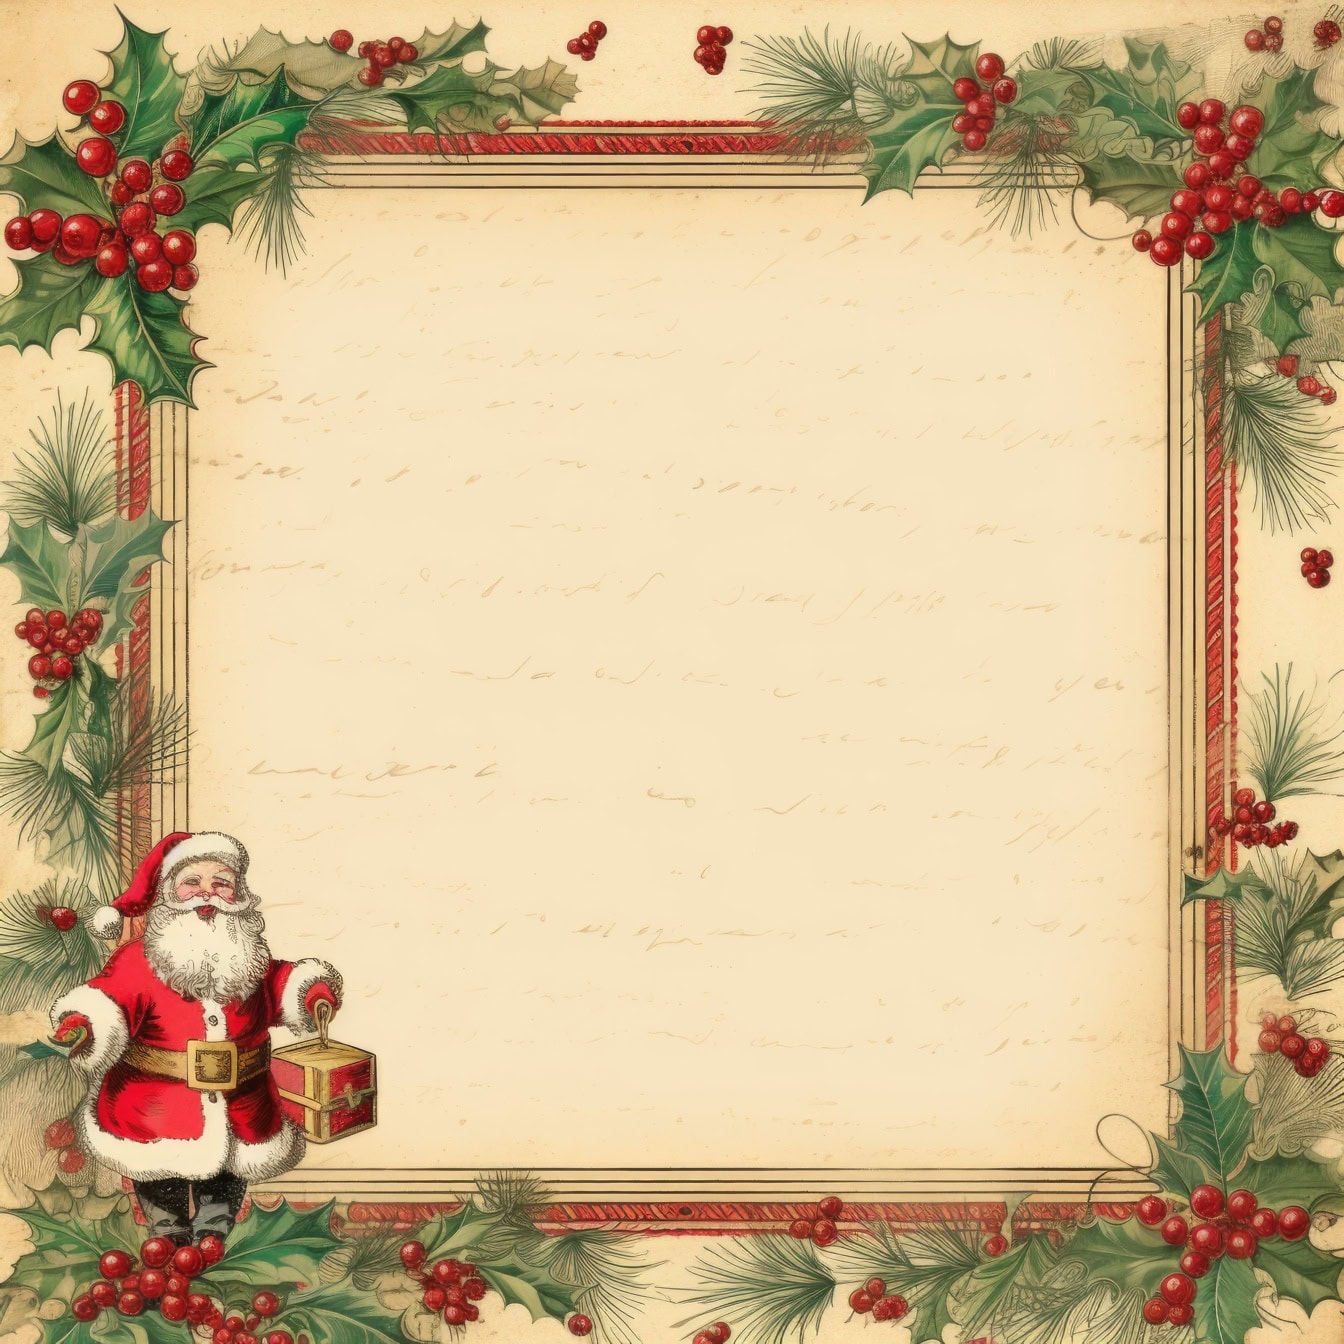 Perinteinen retrotyylinen joulukorttipohja, jossa on holly-seppelekehys ja joulupukki